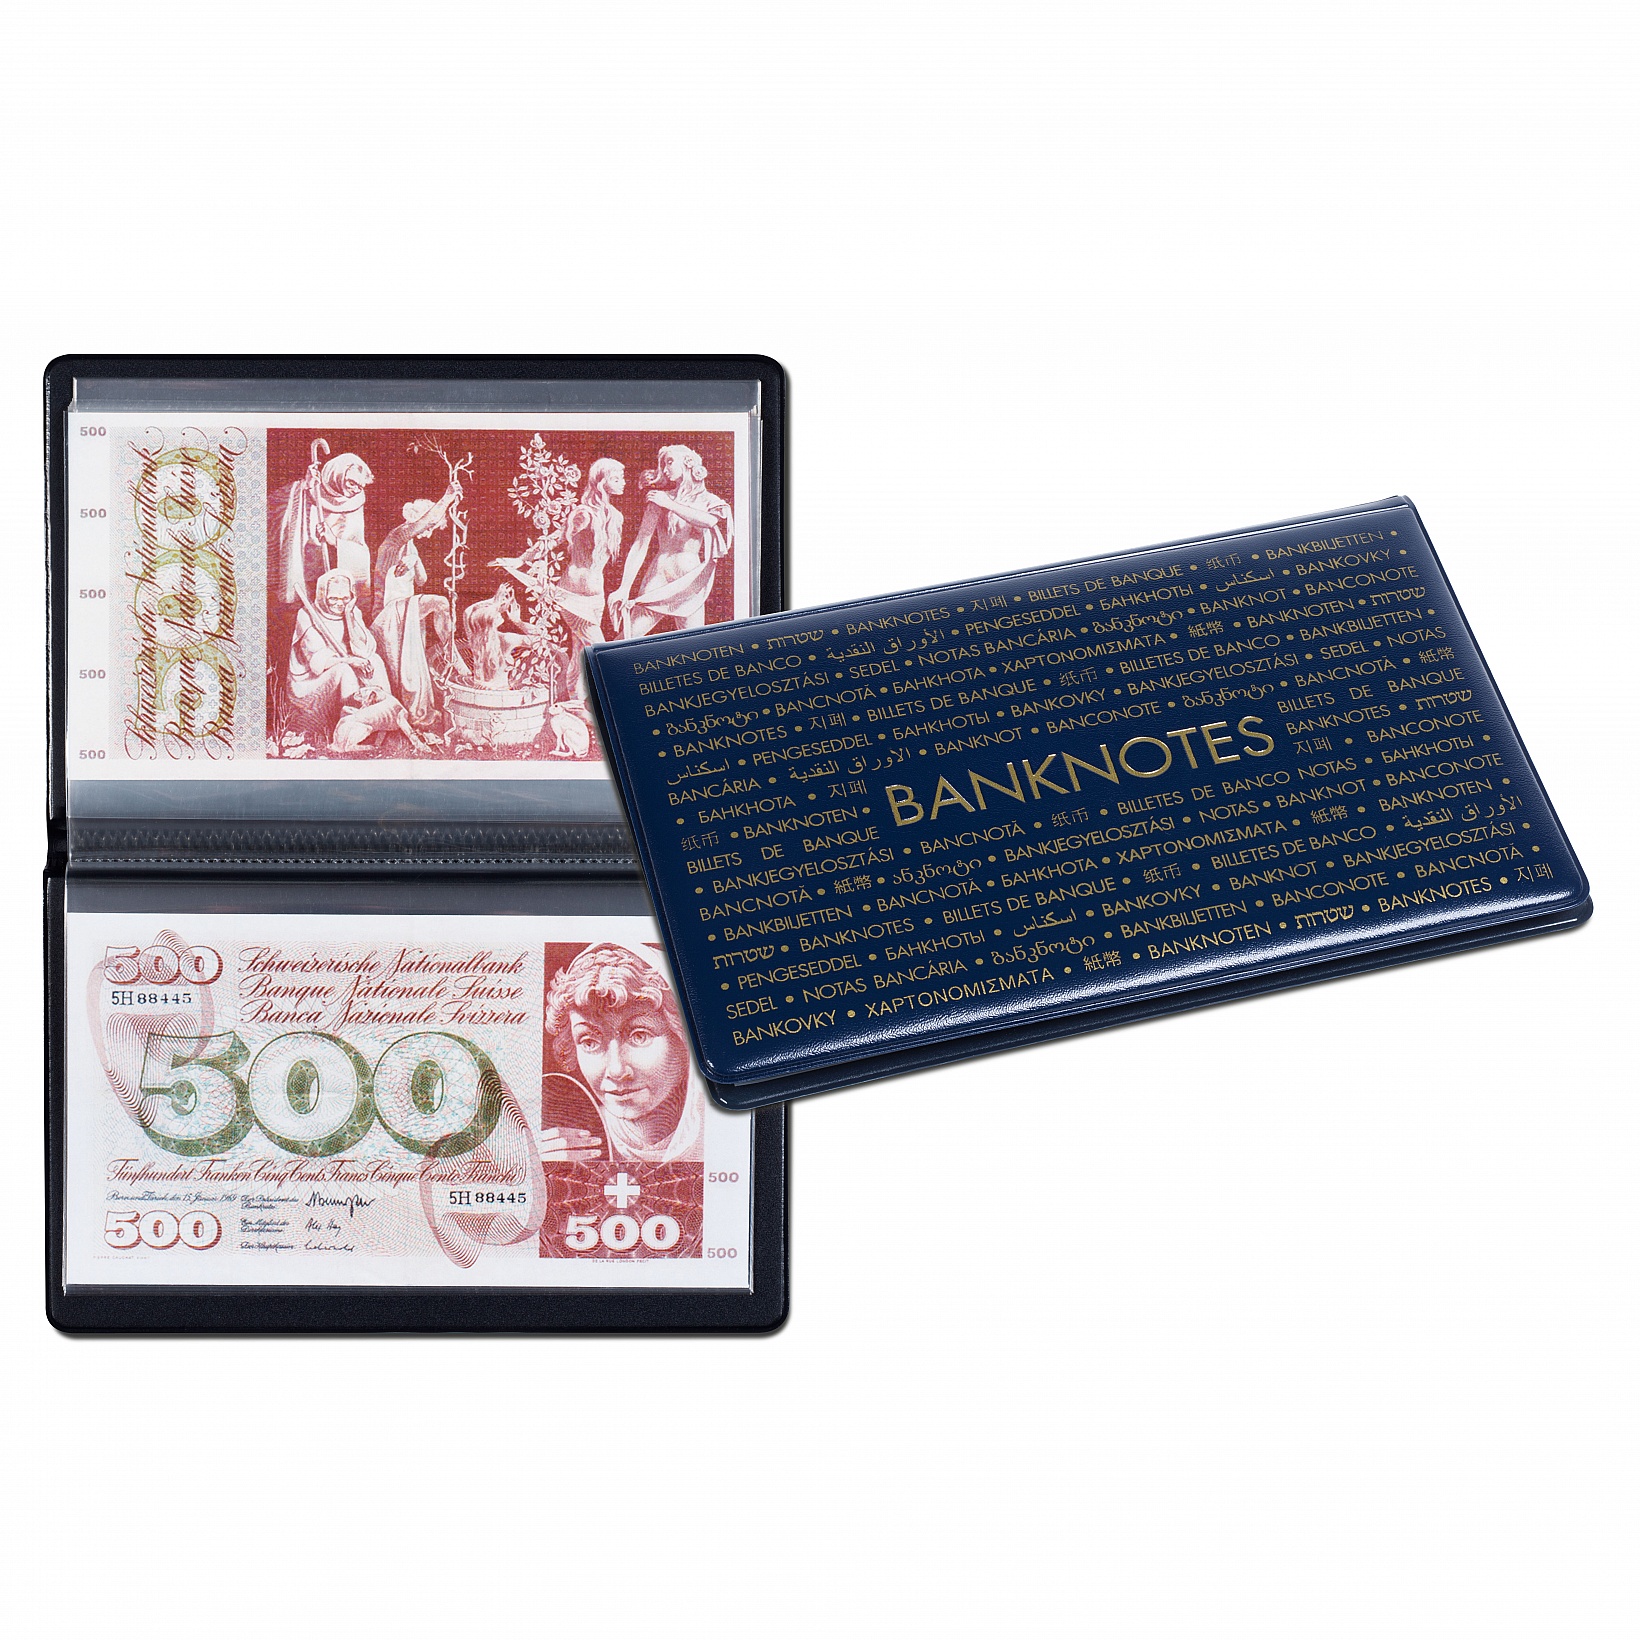 Album de poche route banknotes 170 - La Poste